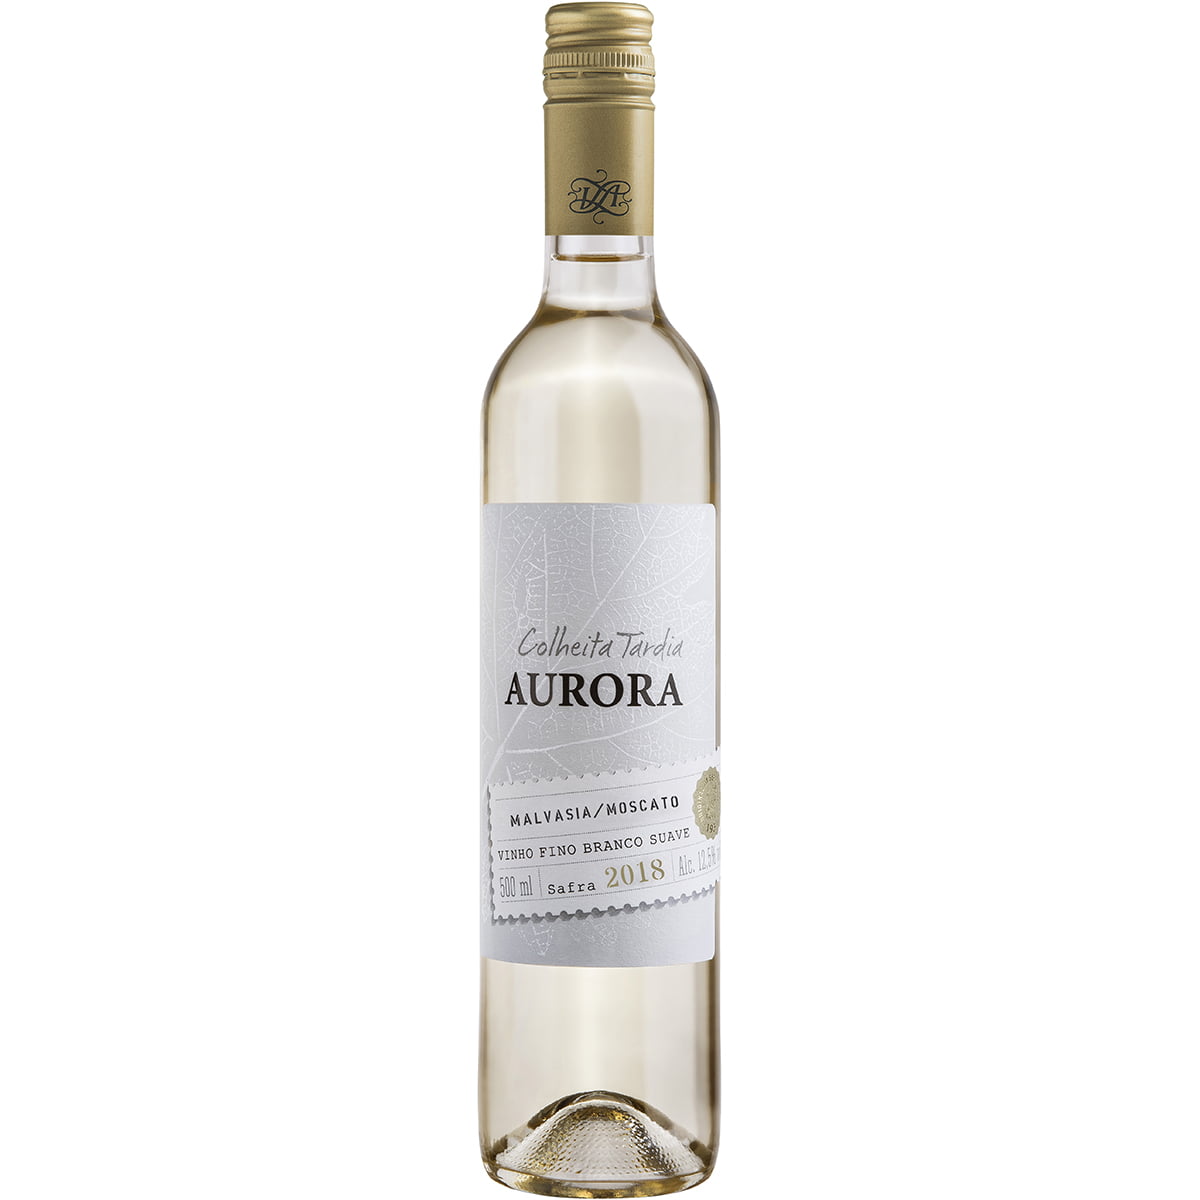 Vinho Aurora Colheita Tardia Malvasia/Moscato Branco Suave 500ml